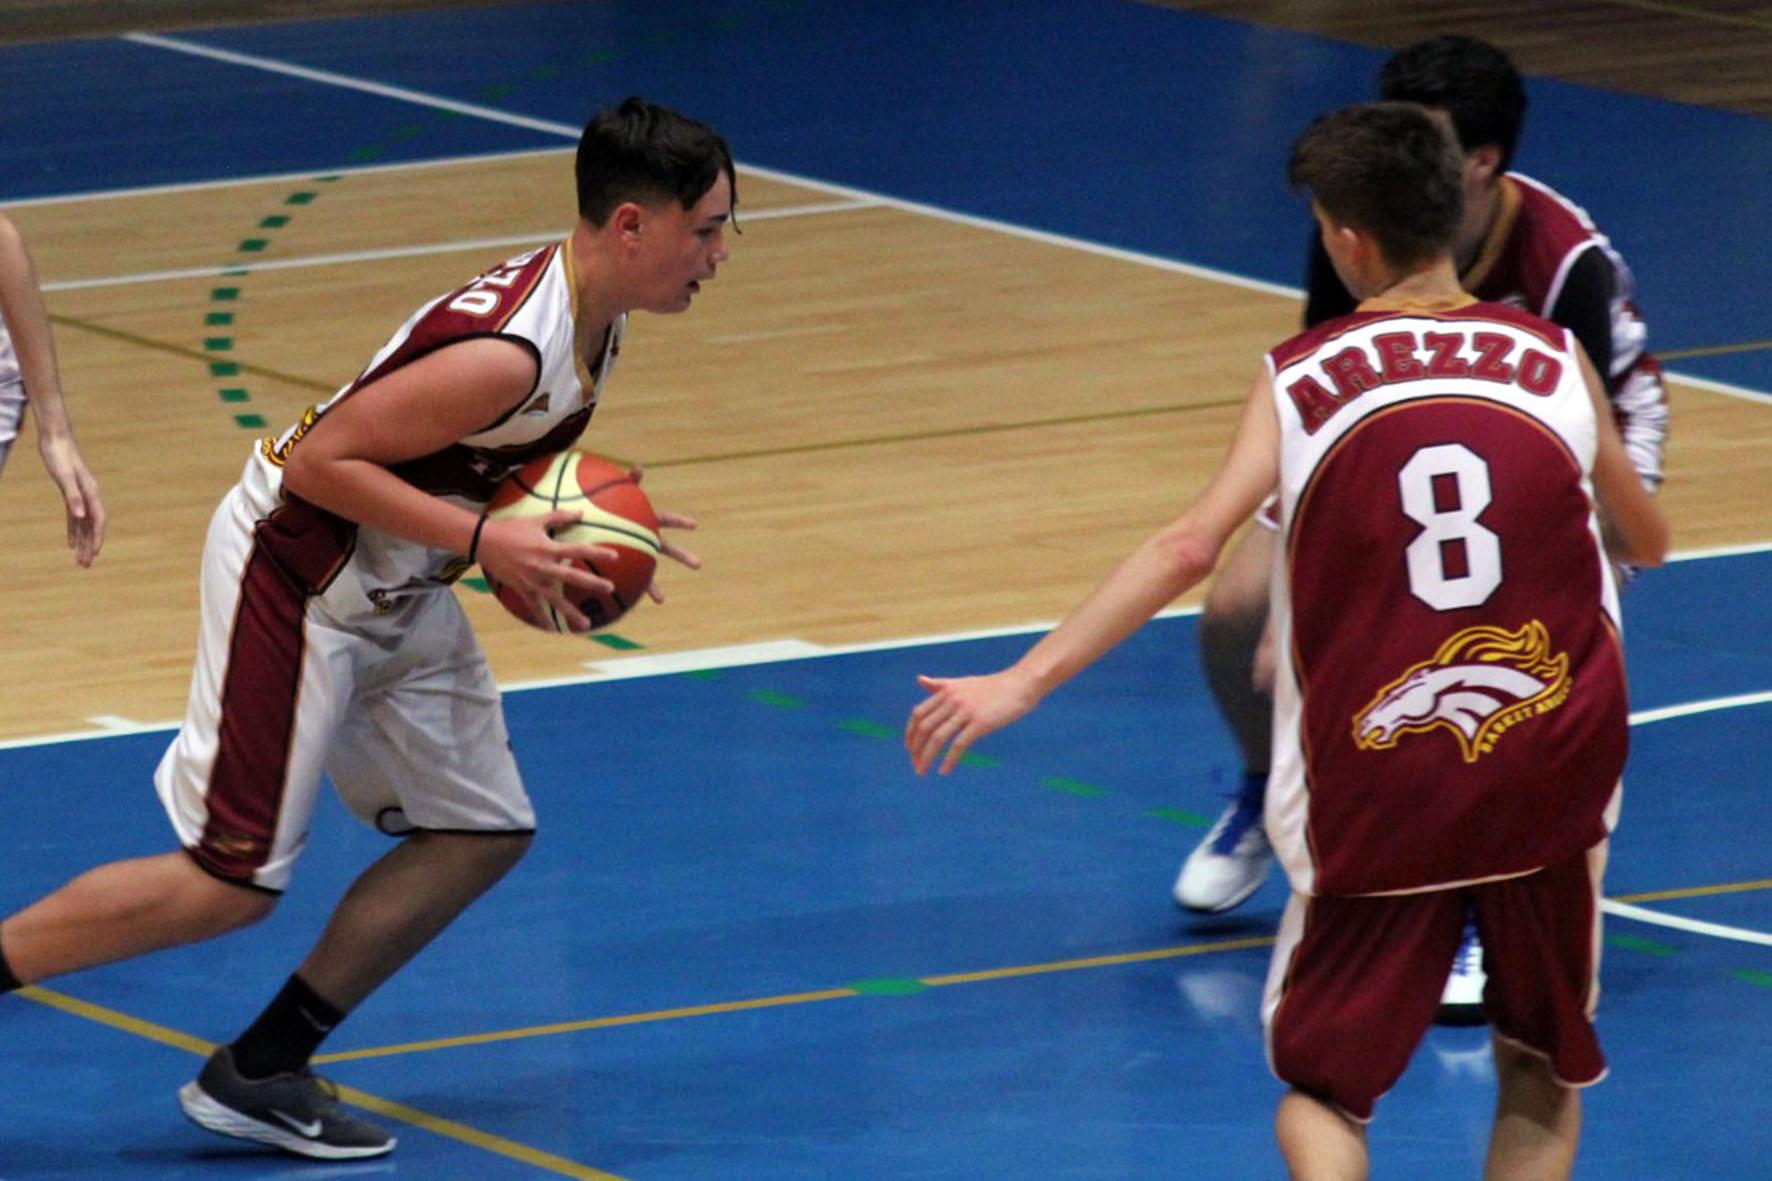 Inizio dei campionati giovanili Scuola Basket Arezzo.